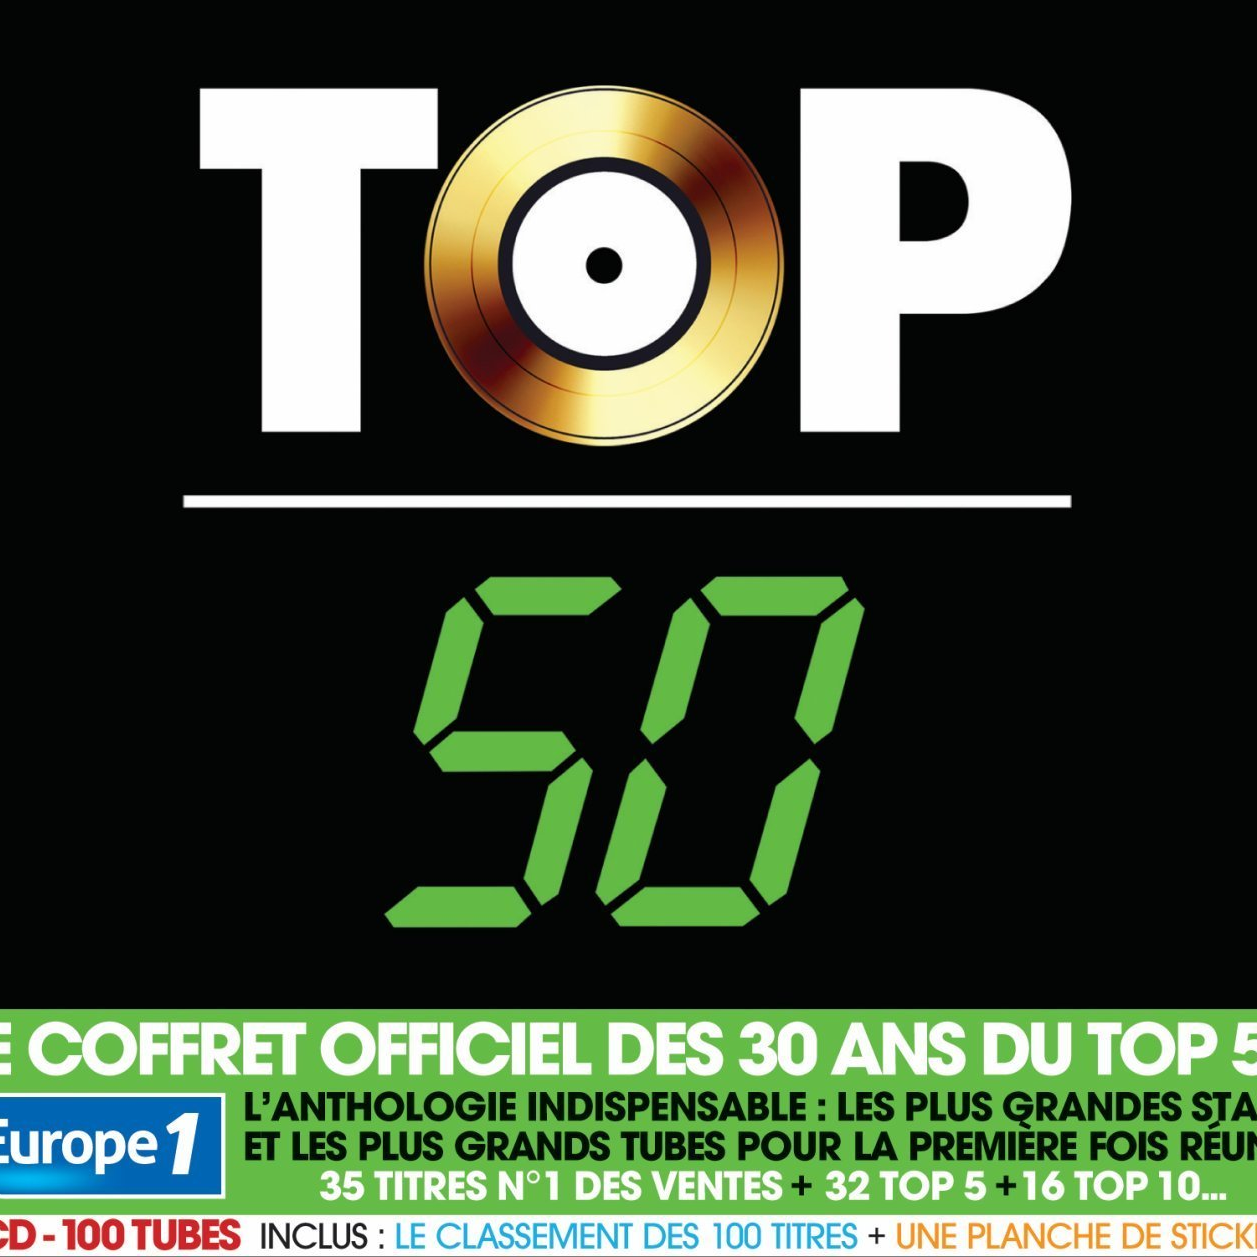 Обложка top10. Top50-CD. Top 50. Радио топ 50